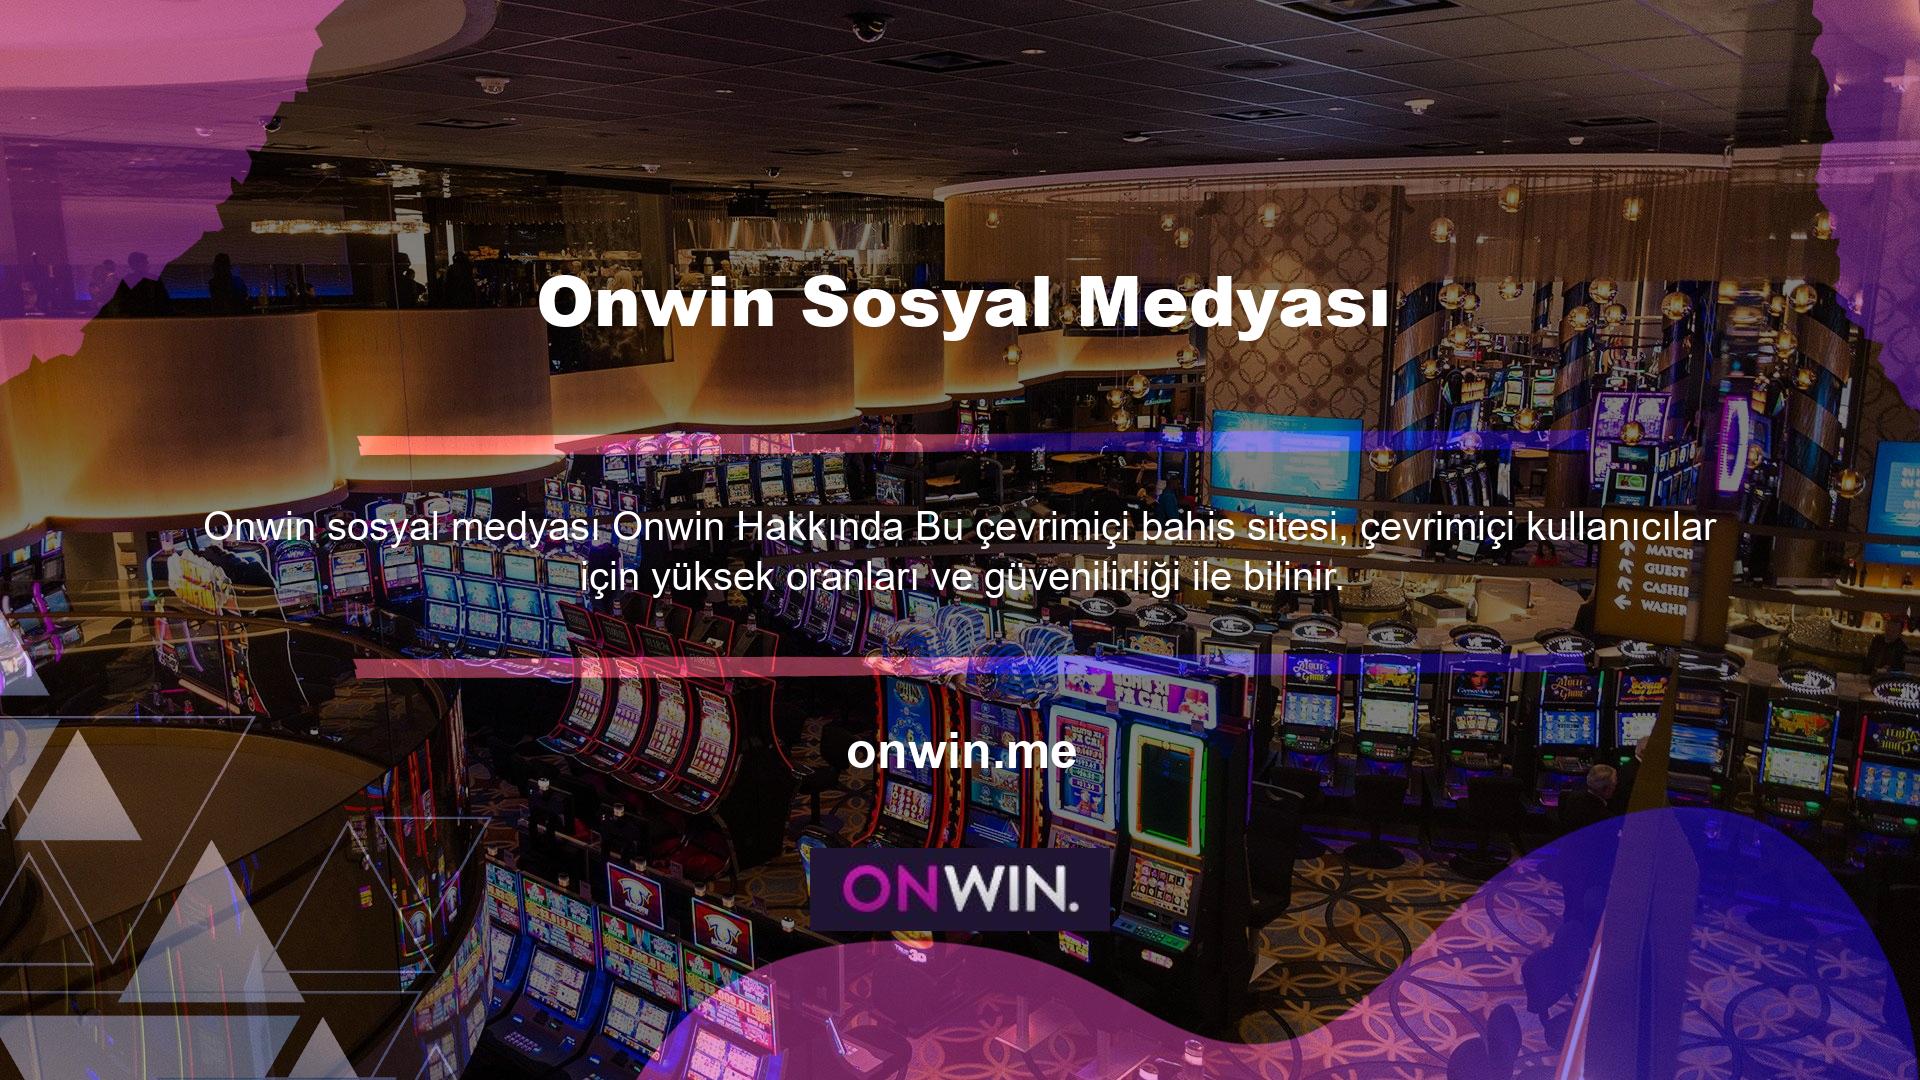 Türk bahis tutkunlarına kaliteli hizmetler sunan ve kullanıcılarına lisanslı güvenilir bir oyun ortamı sağlayan Onwin Facebook giriş programı, öncelikle bir online adres ile kayıt olmanızı gerektiriyor